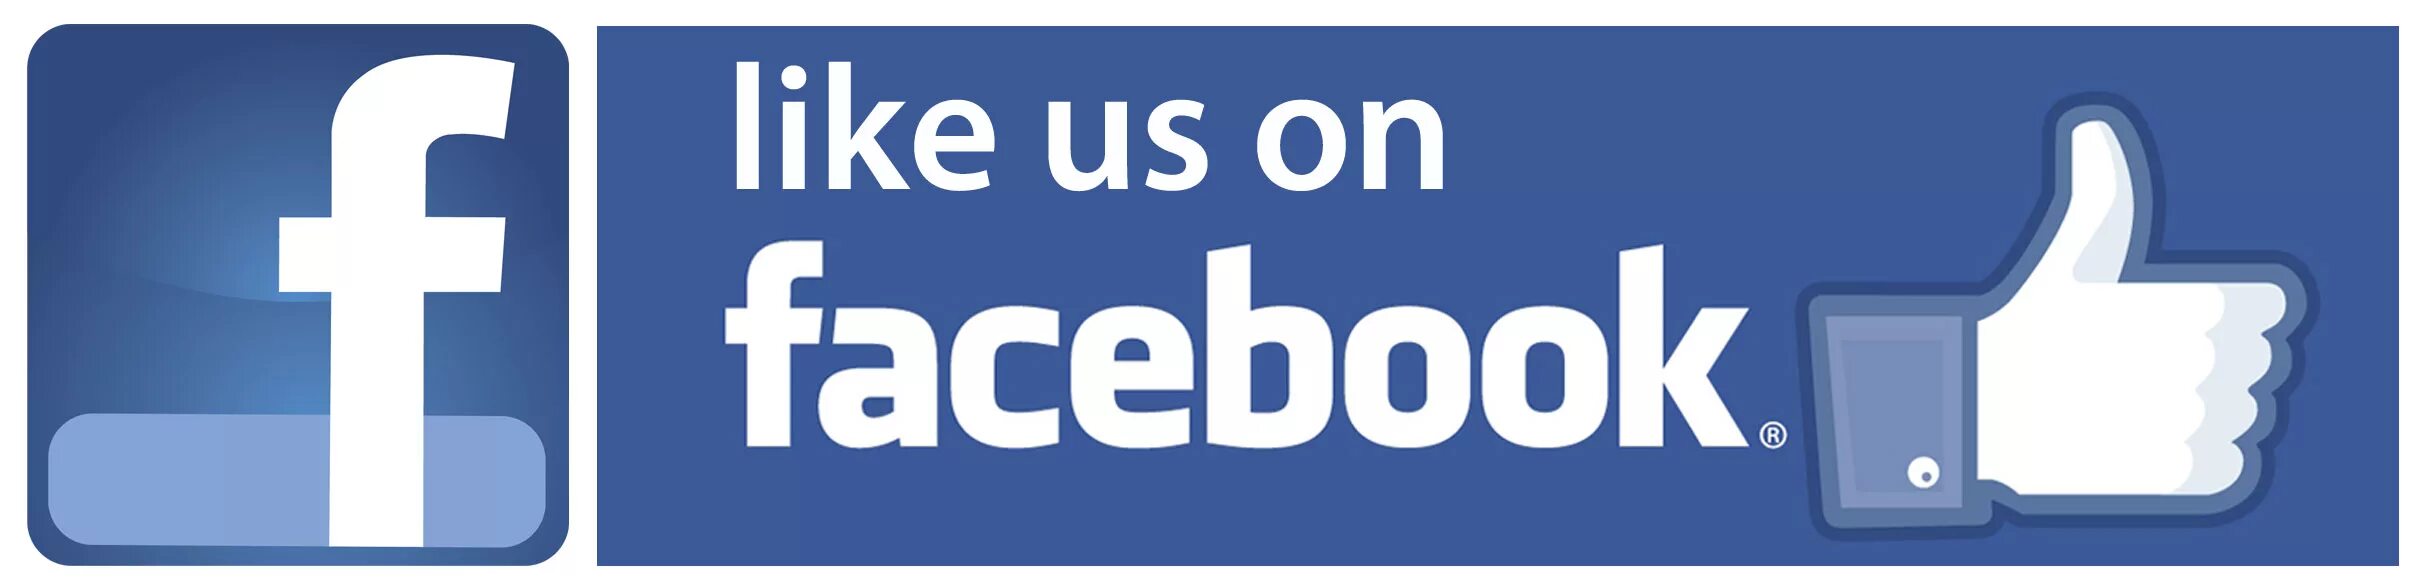 Us like posting. Follow в Фейсбук. Лайк. Like us on Facebook. Find us on Facebook.